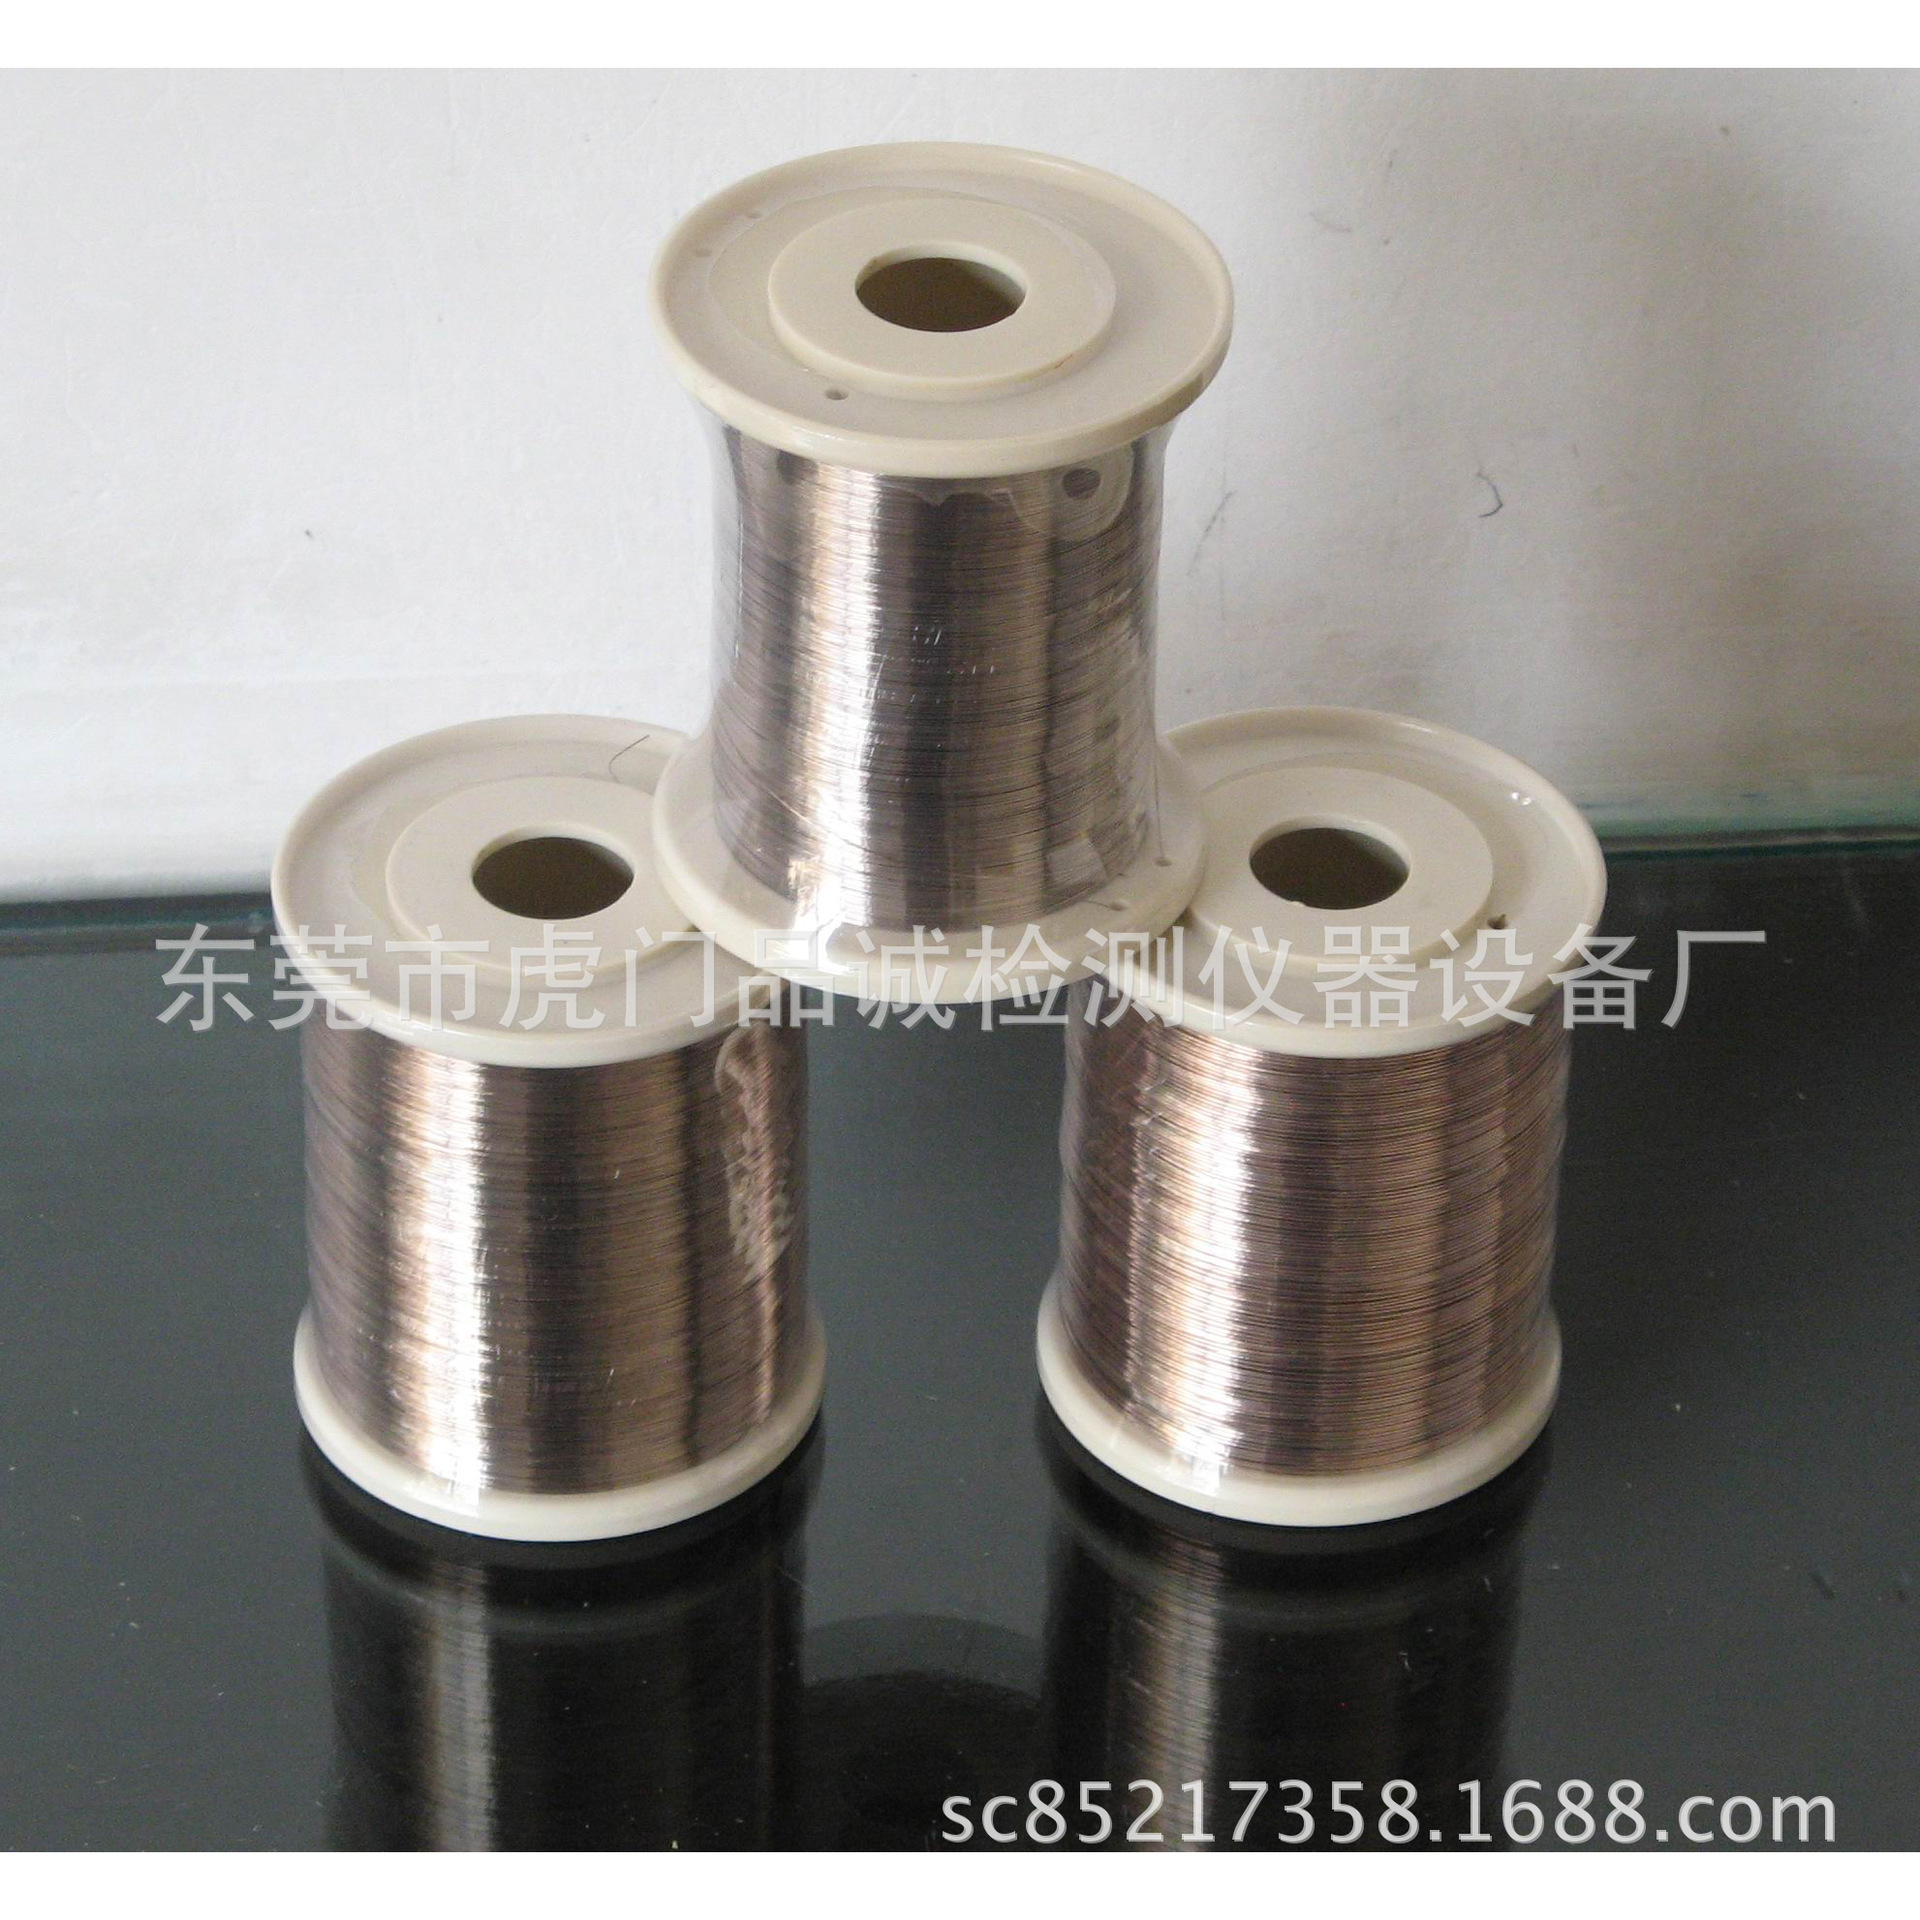 铜线专用银焊丝 特价供银焊丝 银丝 焊丝 银丝 0.2mm银焊丝2